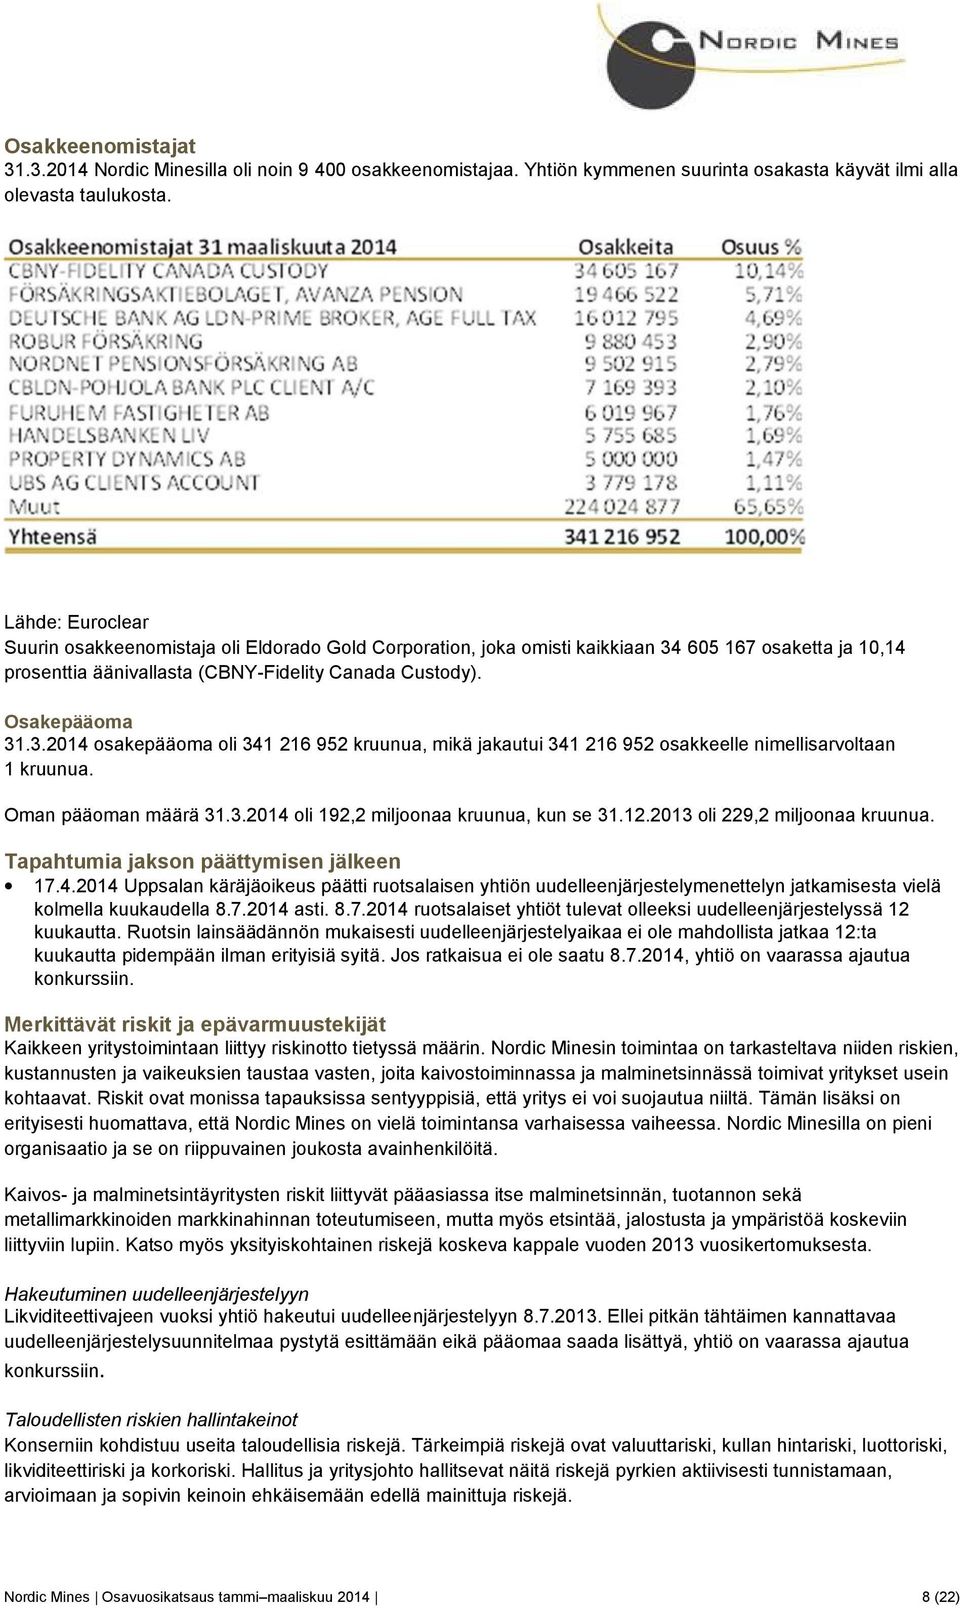 Oman pääoman määrä 3.3.204 oli 92,2 miljoonaa kruunua, kun se 3.2.203 oli 229,2 miljoonaa kruunua. Tapahtumia jakson päättymisen jälkeen 7.4.204 Uppsalan käräjäoikeus päätti ruotsalaisen yhtiön uudelleenjärjestelymenettelyn jatkamisesta vielä kolmella kuukaudella 8.